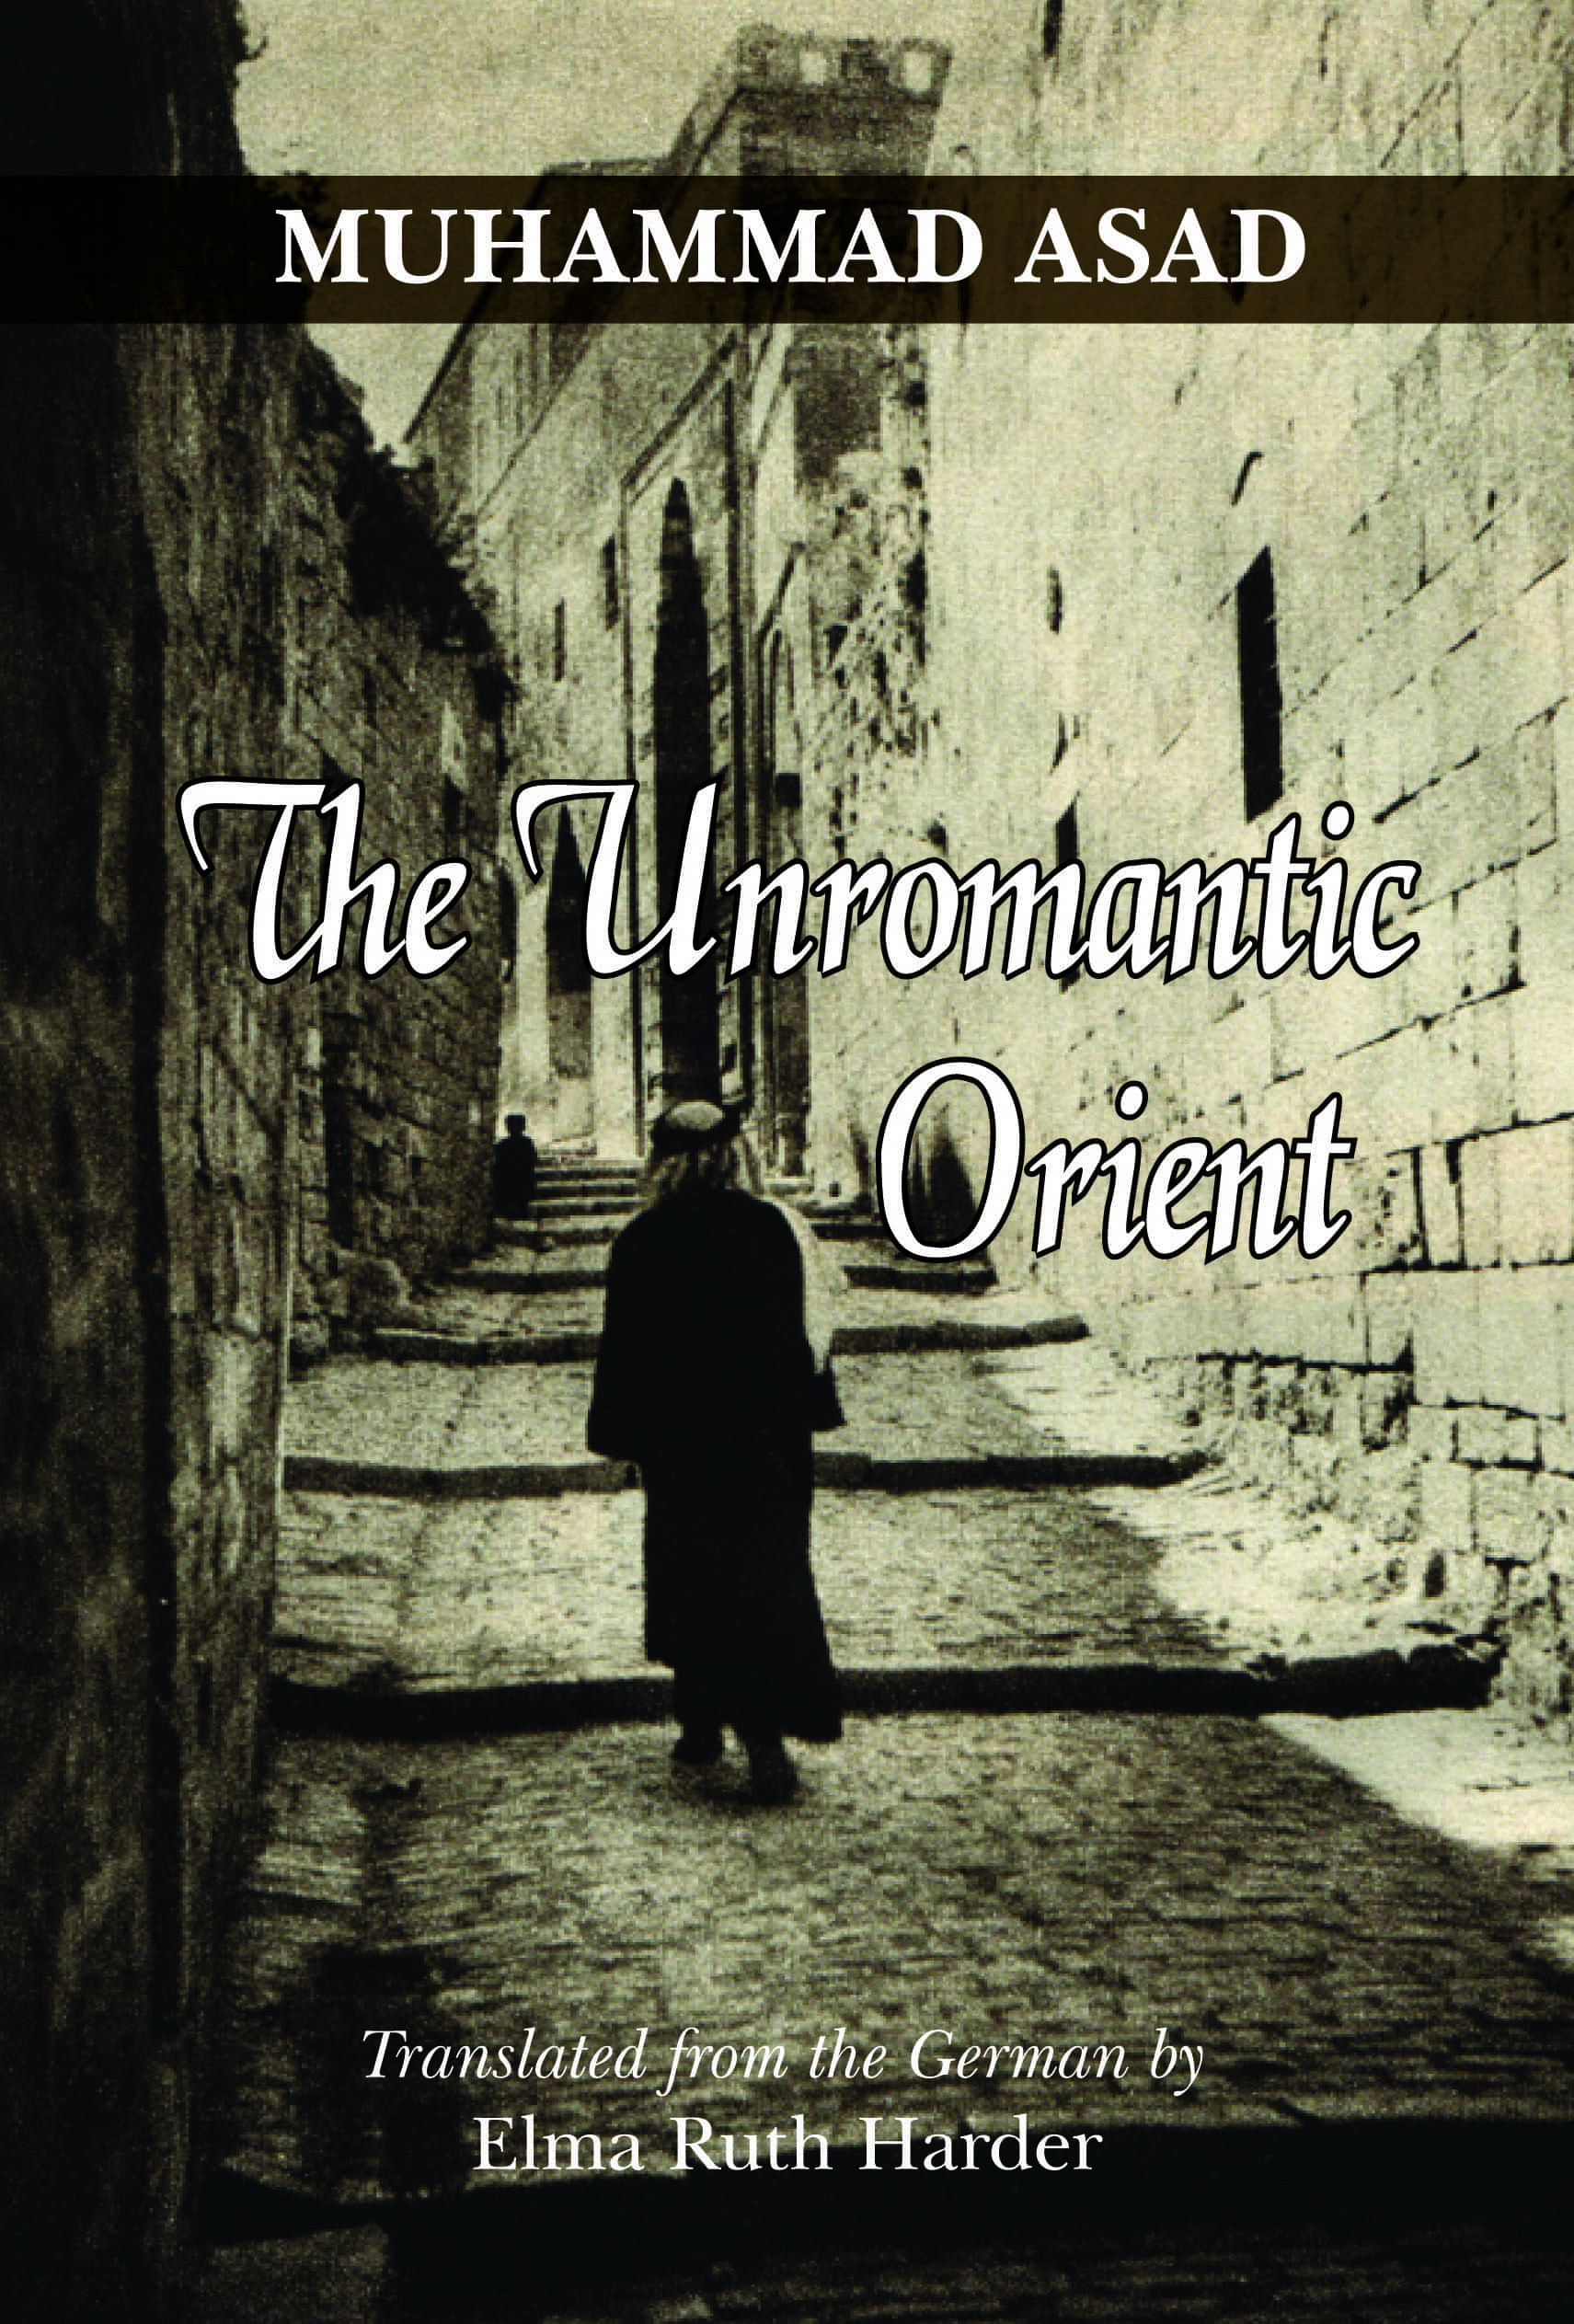 The Unromantic Orient